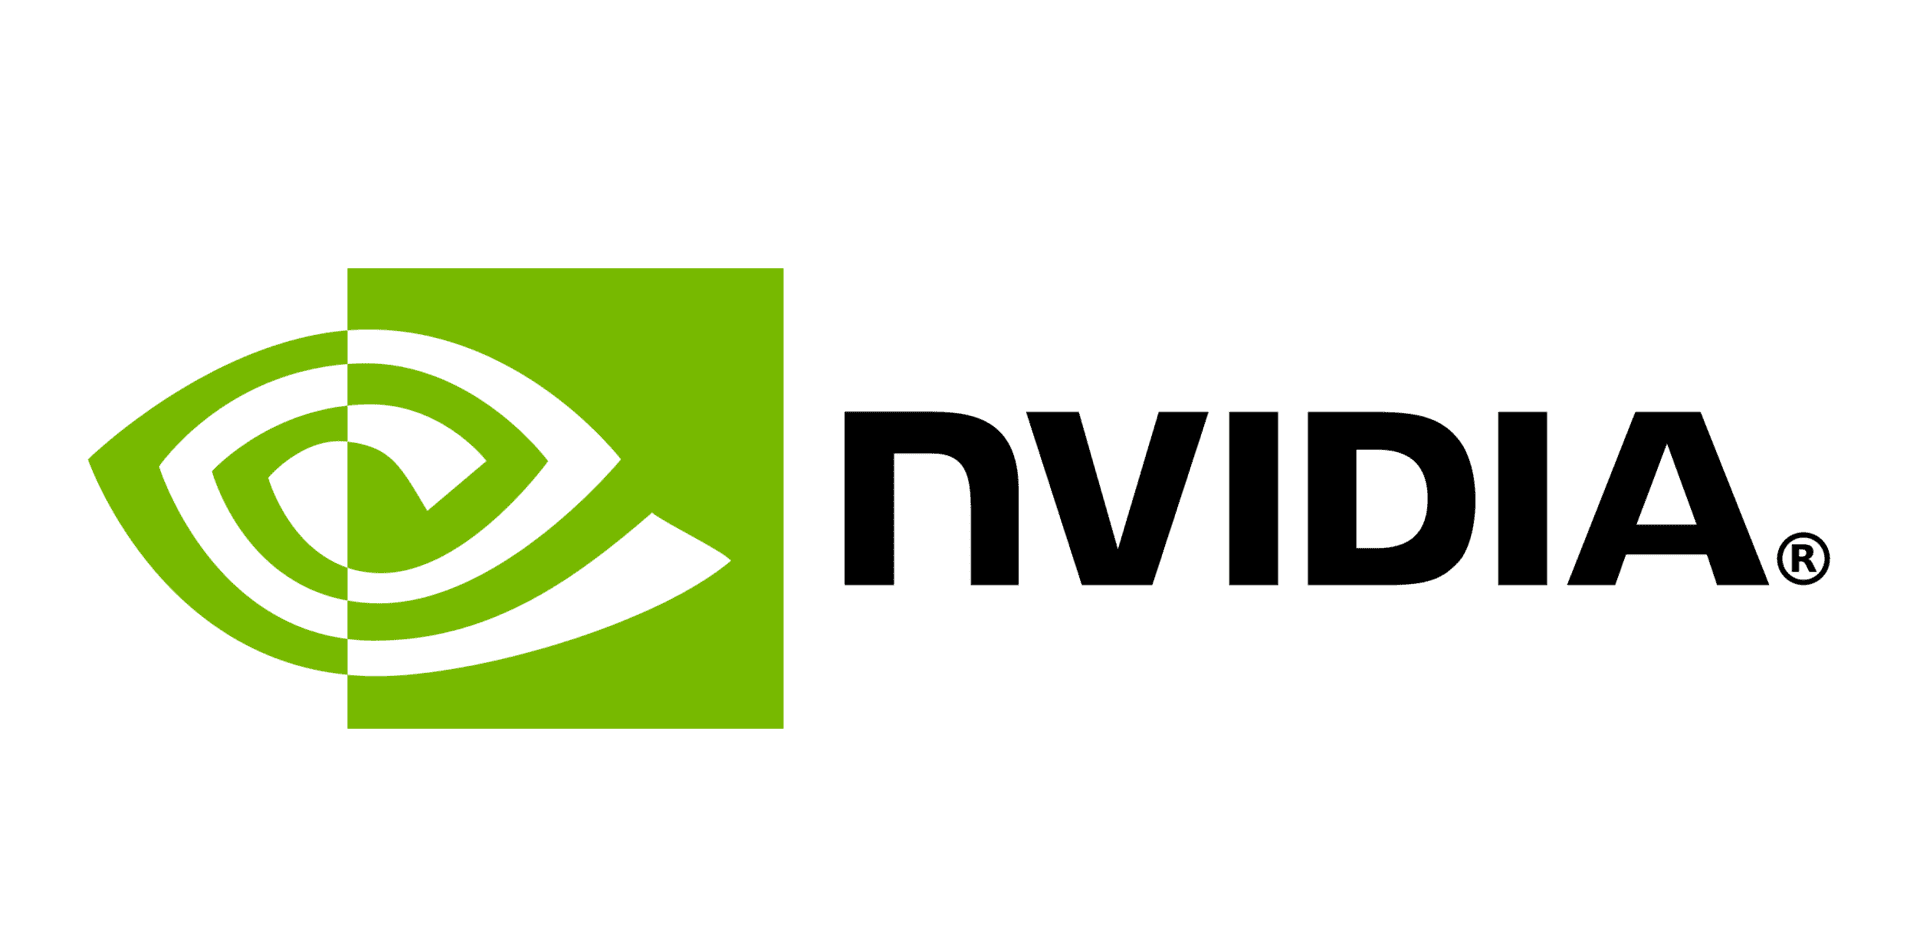 NVIDIA - Công ty non ‘quật ngã’ gã khổng lồ Intel